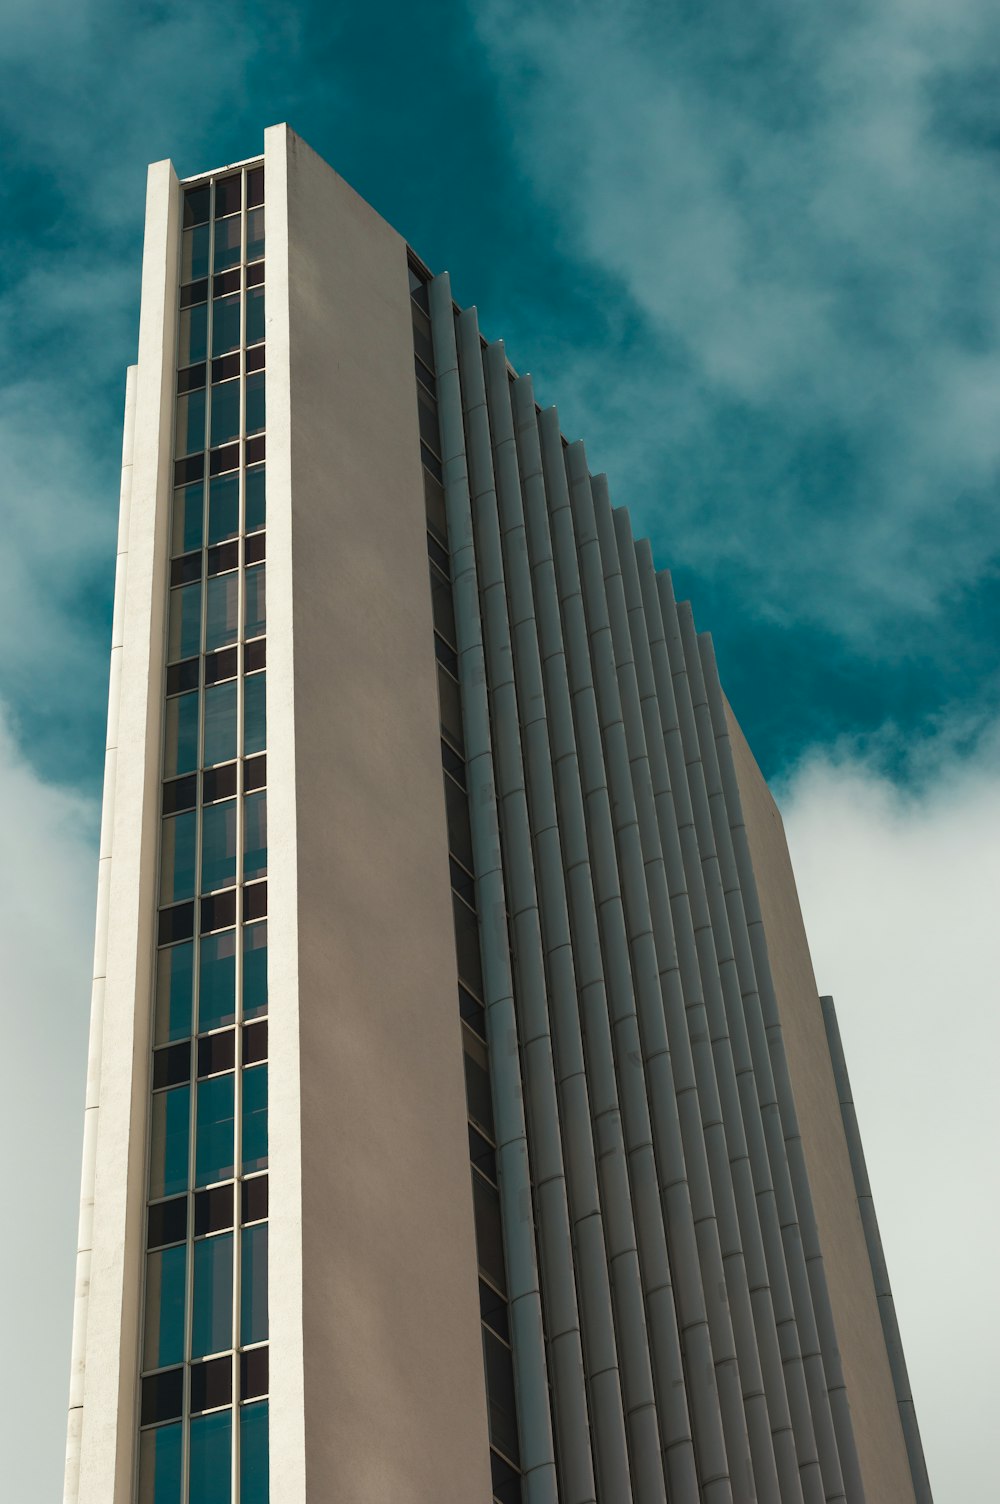 Photographie en contre-plongée d’un immeuble de grande hauteur à plusieurs étages pendant la journée